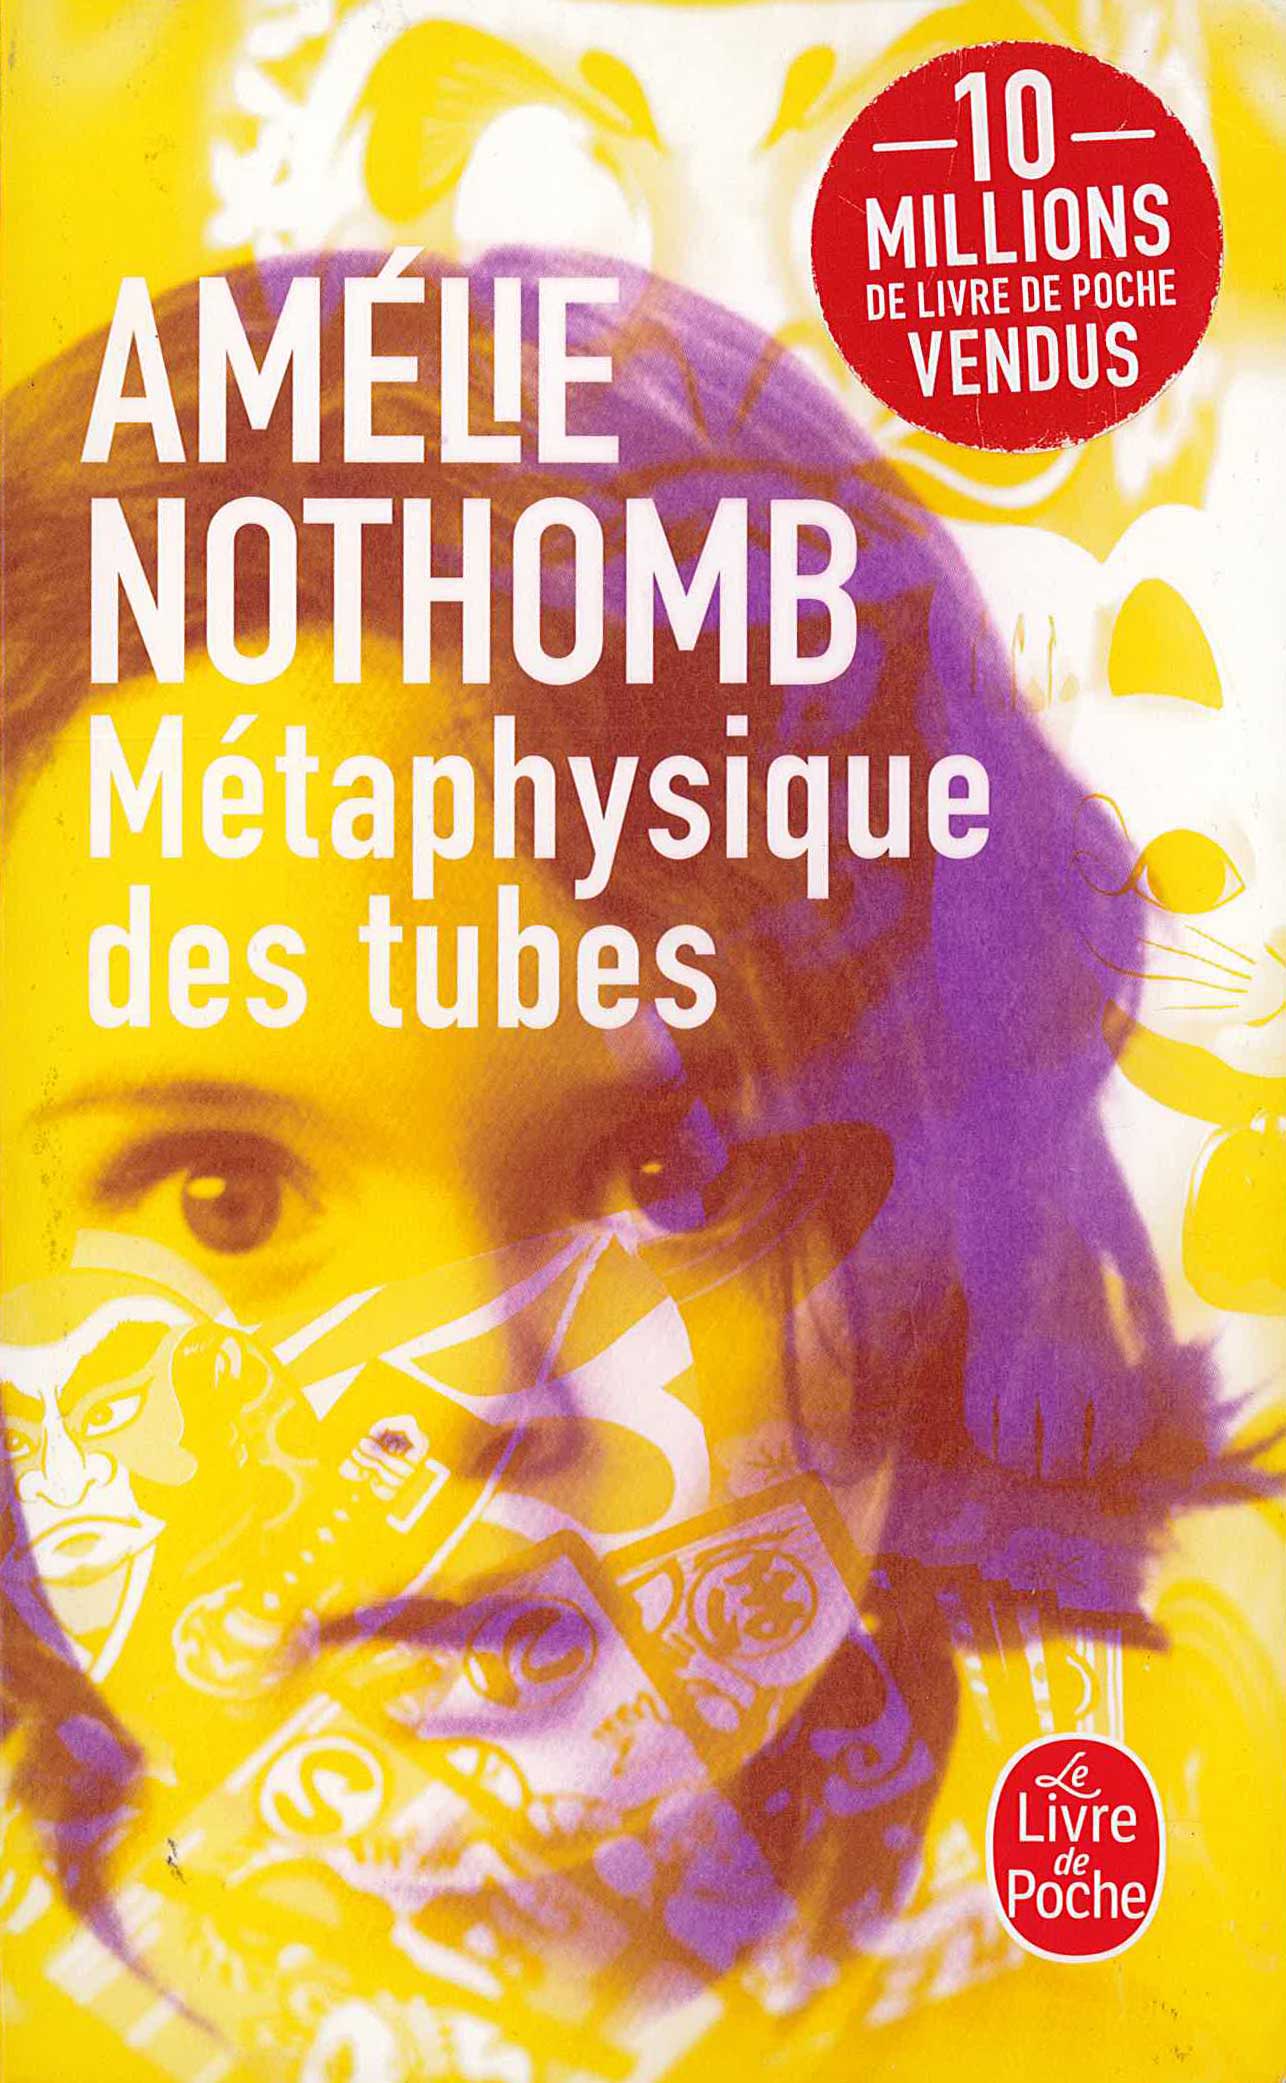 couverture du livre de poche de metaphysique des tubes deuxieme version